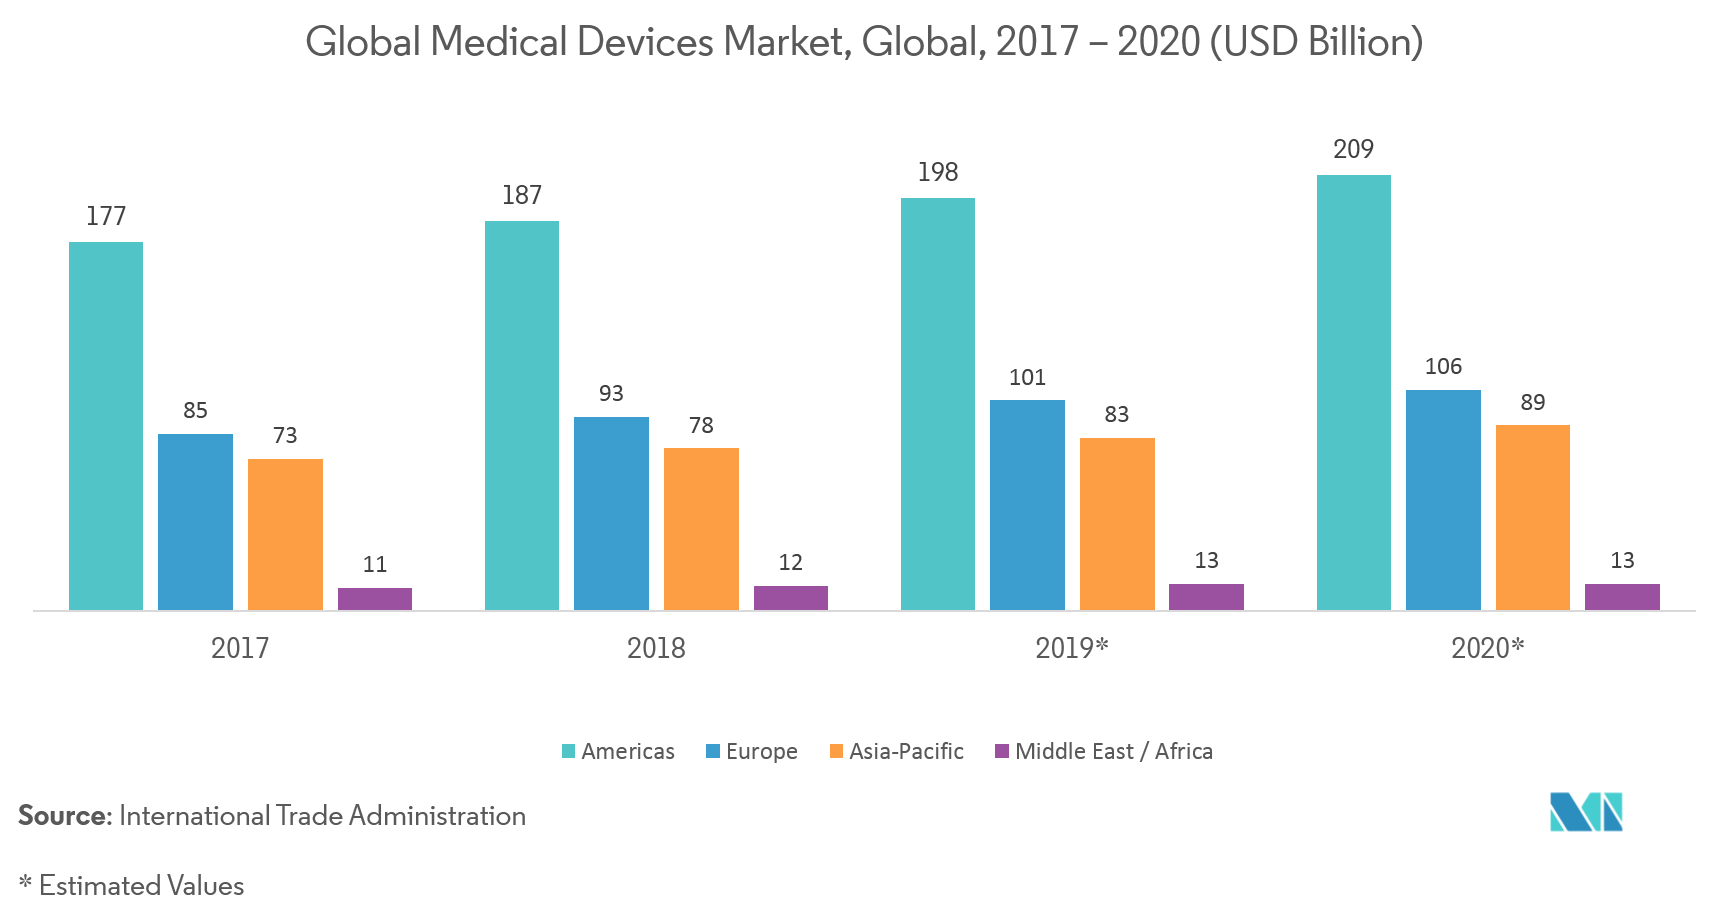 Marché des équipements de dépôt physique en phase vapeur (PVD)  marché mondial des dispositifs médicaux, mondial, 2017-2020 (en milliards USD)